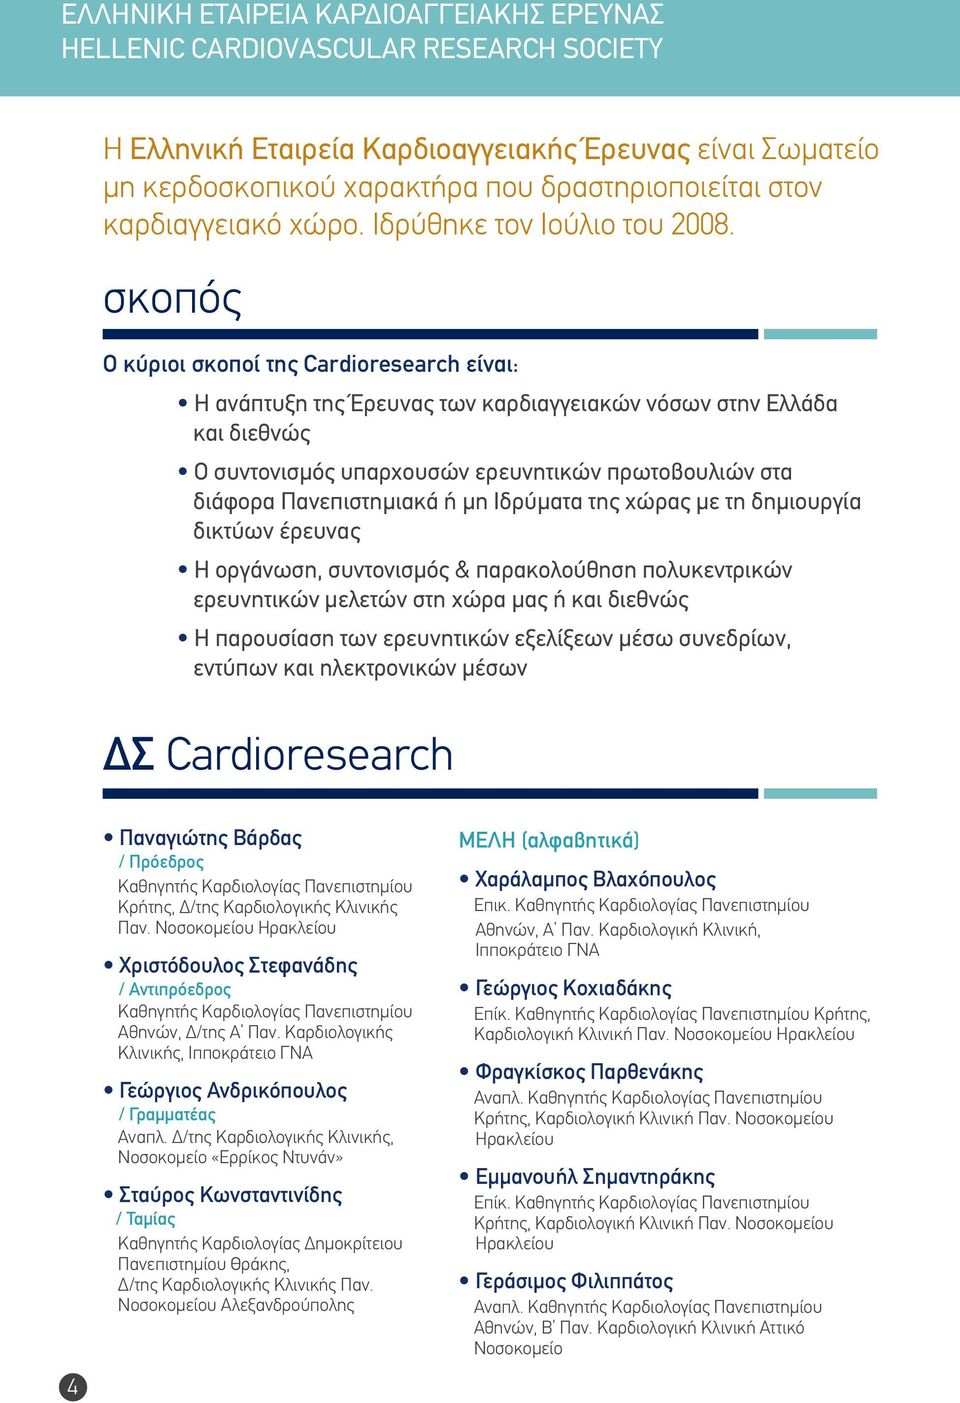 σκοπός Ο κύριοι σκοποί της Cardioresearch είναι: Η ανάπτυξη της Έρευνας των καρδιαγγειακών νόσων στην Ελλάδα και διεθνώς Ο συντονισμός υπαρχουσών ερευνητικών πρωτοβουλιών στα διάφορα Πανεπιστημιακά ή